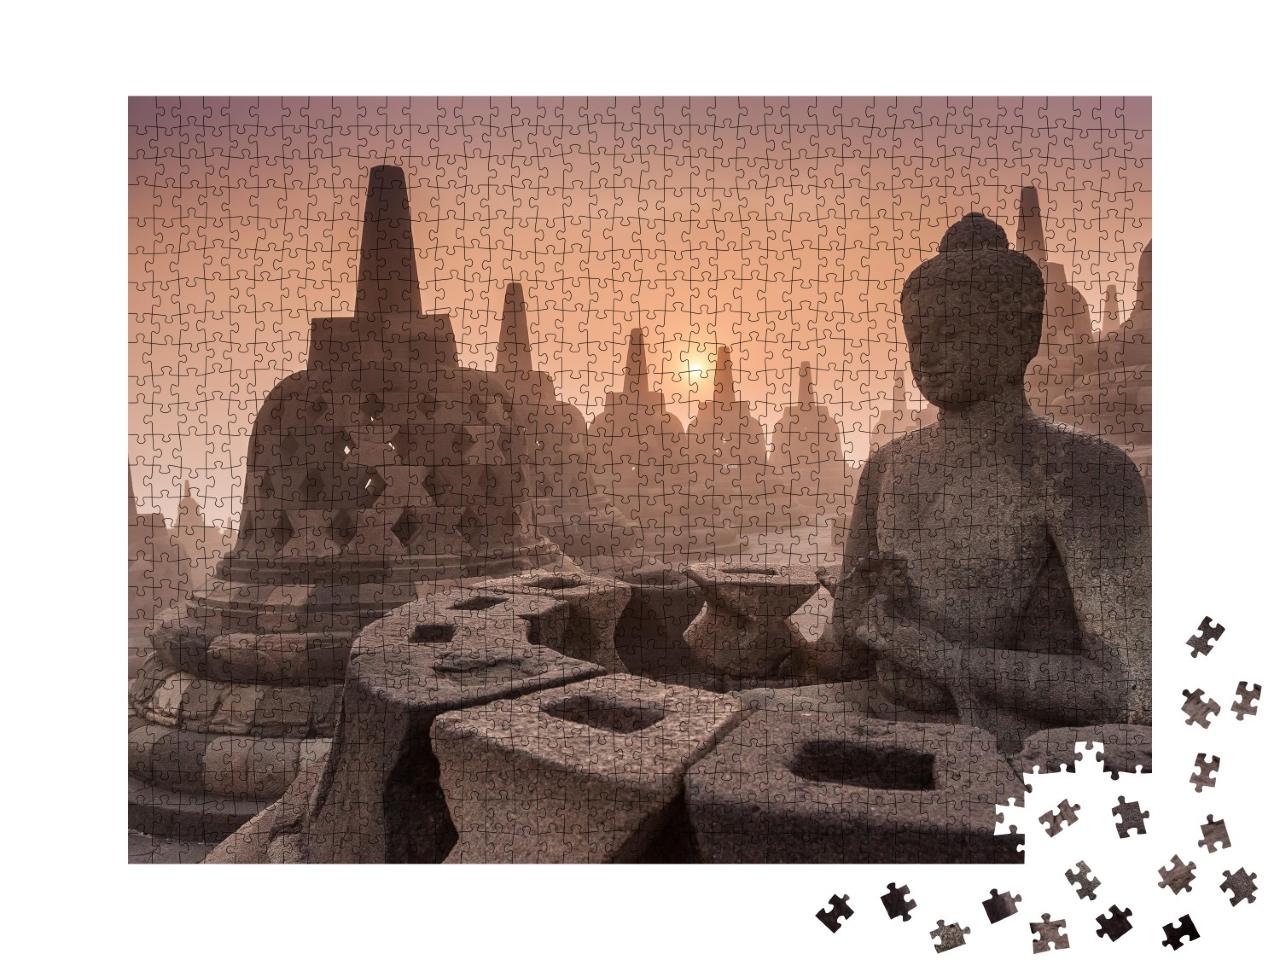 Puzzle de 1000 pièces « Temple bouddhiste de Borobudur, Yogyakarta, Indonésie »